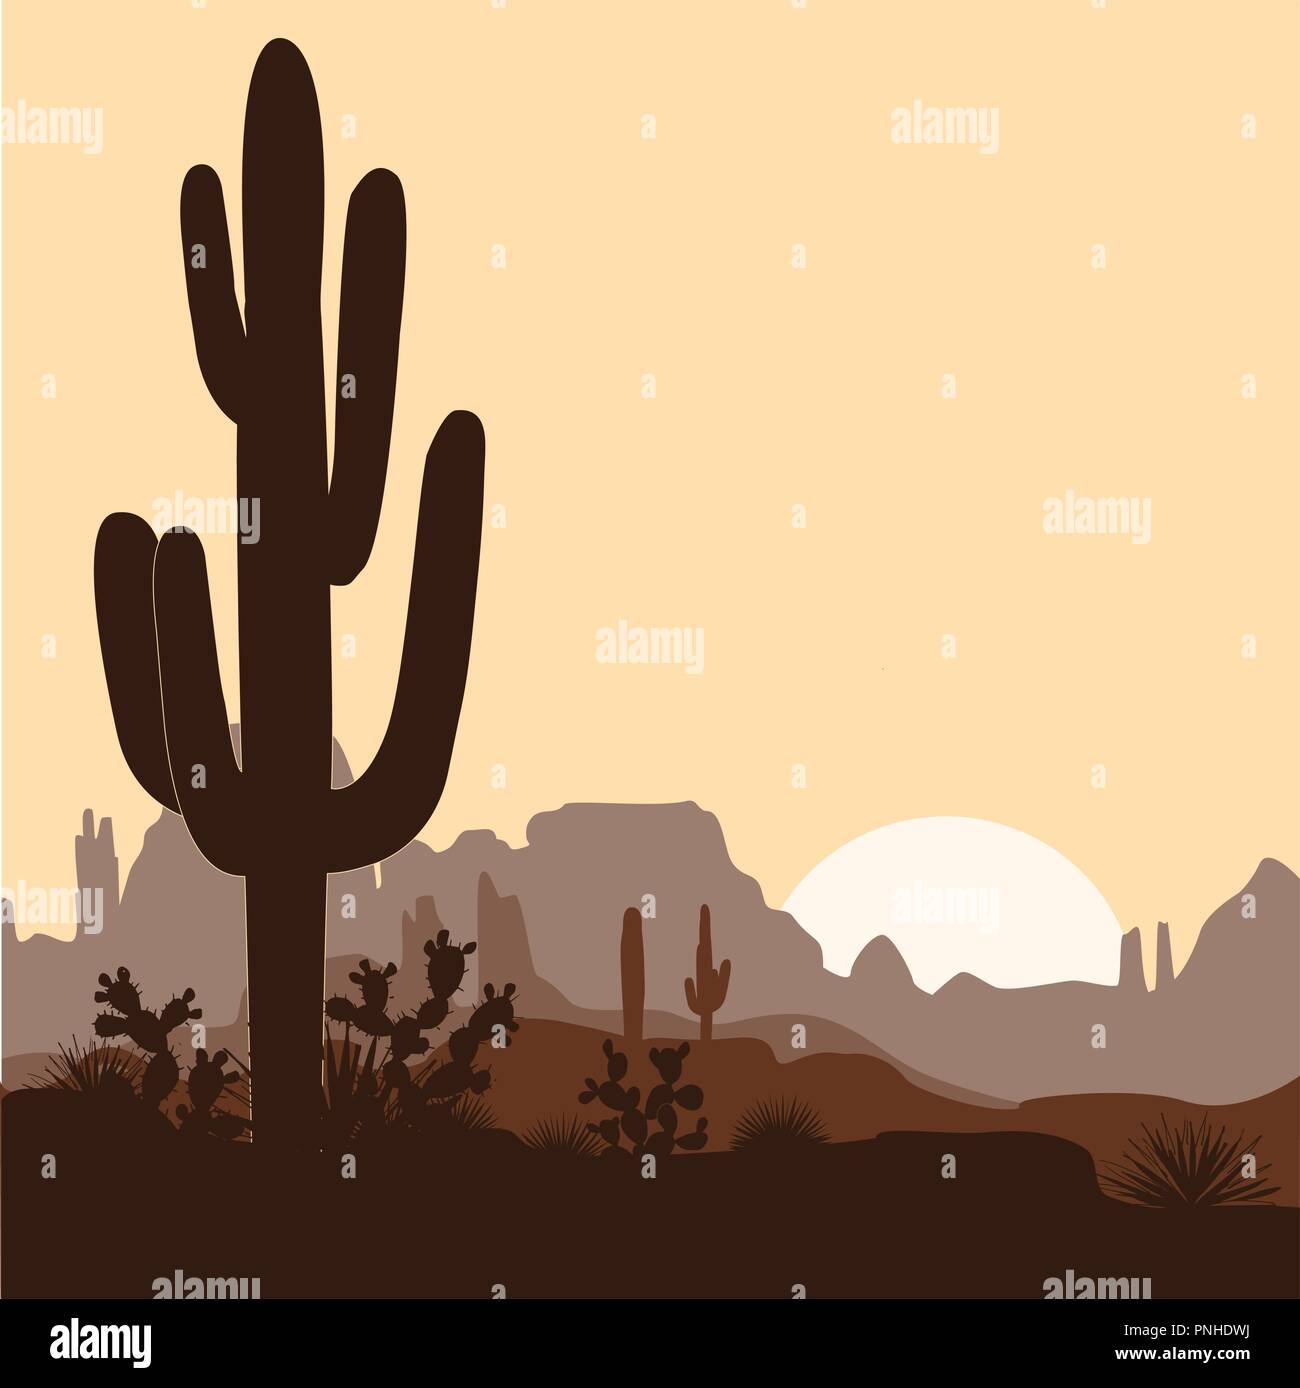 Morgen Landschaft mit Saguaro Kakteen, Agaven und Feigenkakteen, in den Bergen. Vector Illustration. Cute braun Palette, Platz für Text Stock Vektor